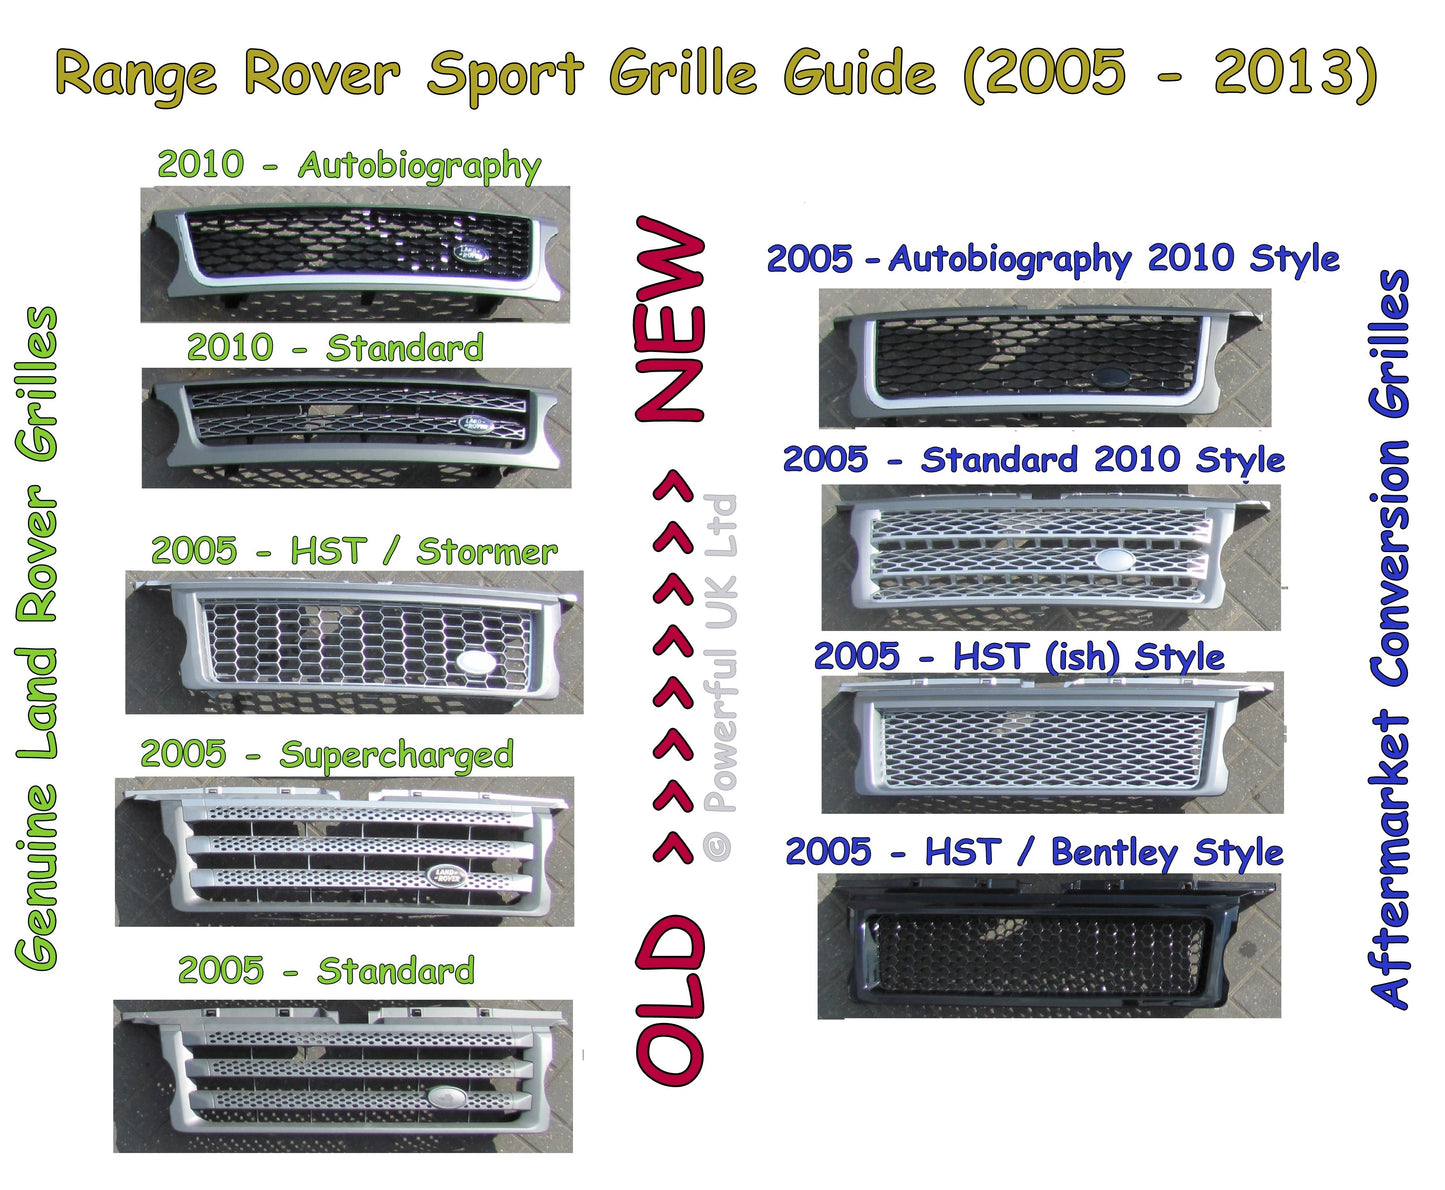 Front Grille - Black/Red/Black for Range Rover Sport 05-09